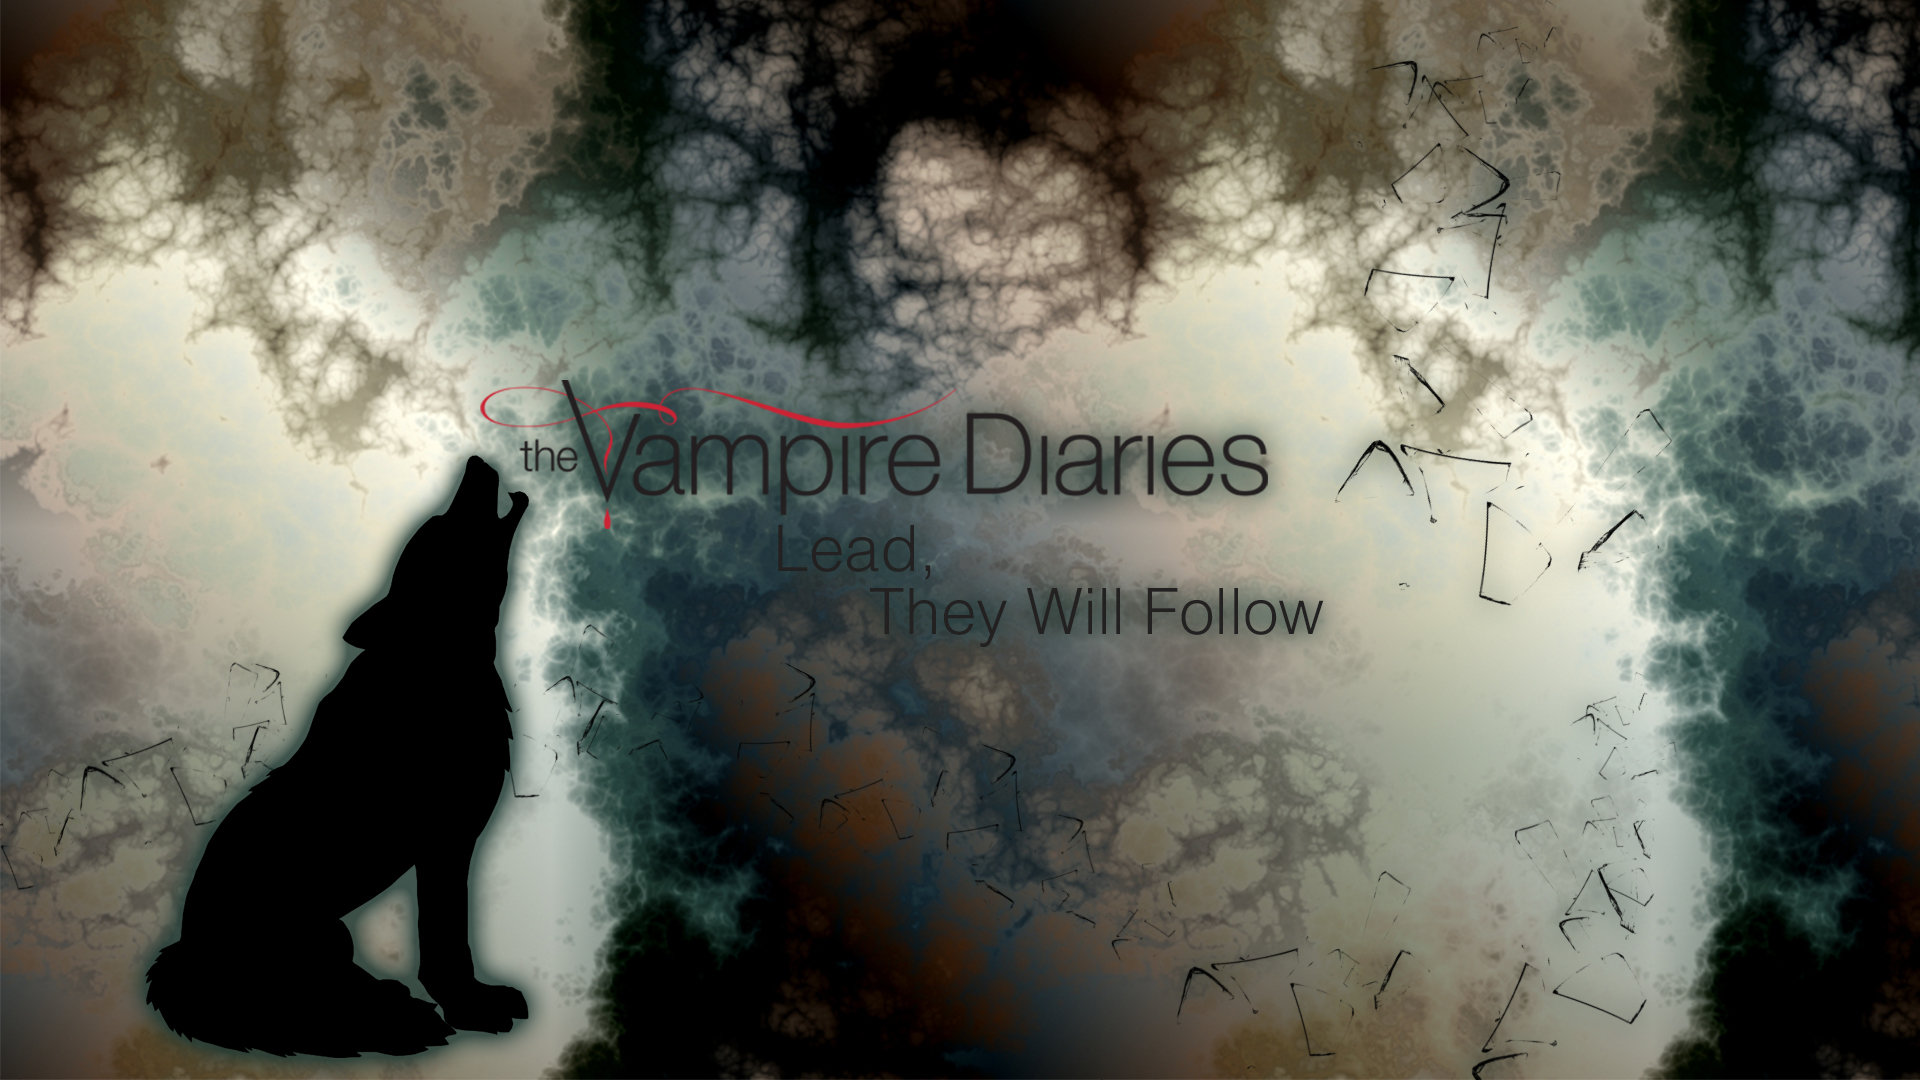 The Vampire Diaries Wallpaper Series